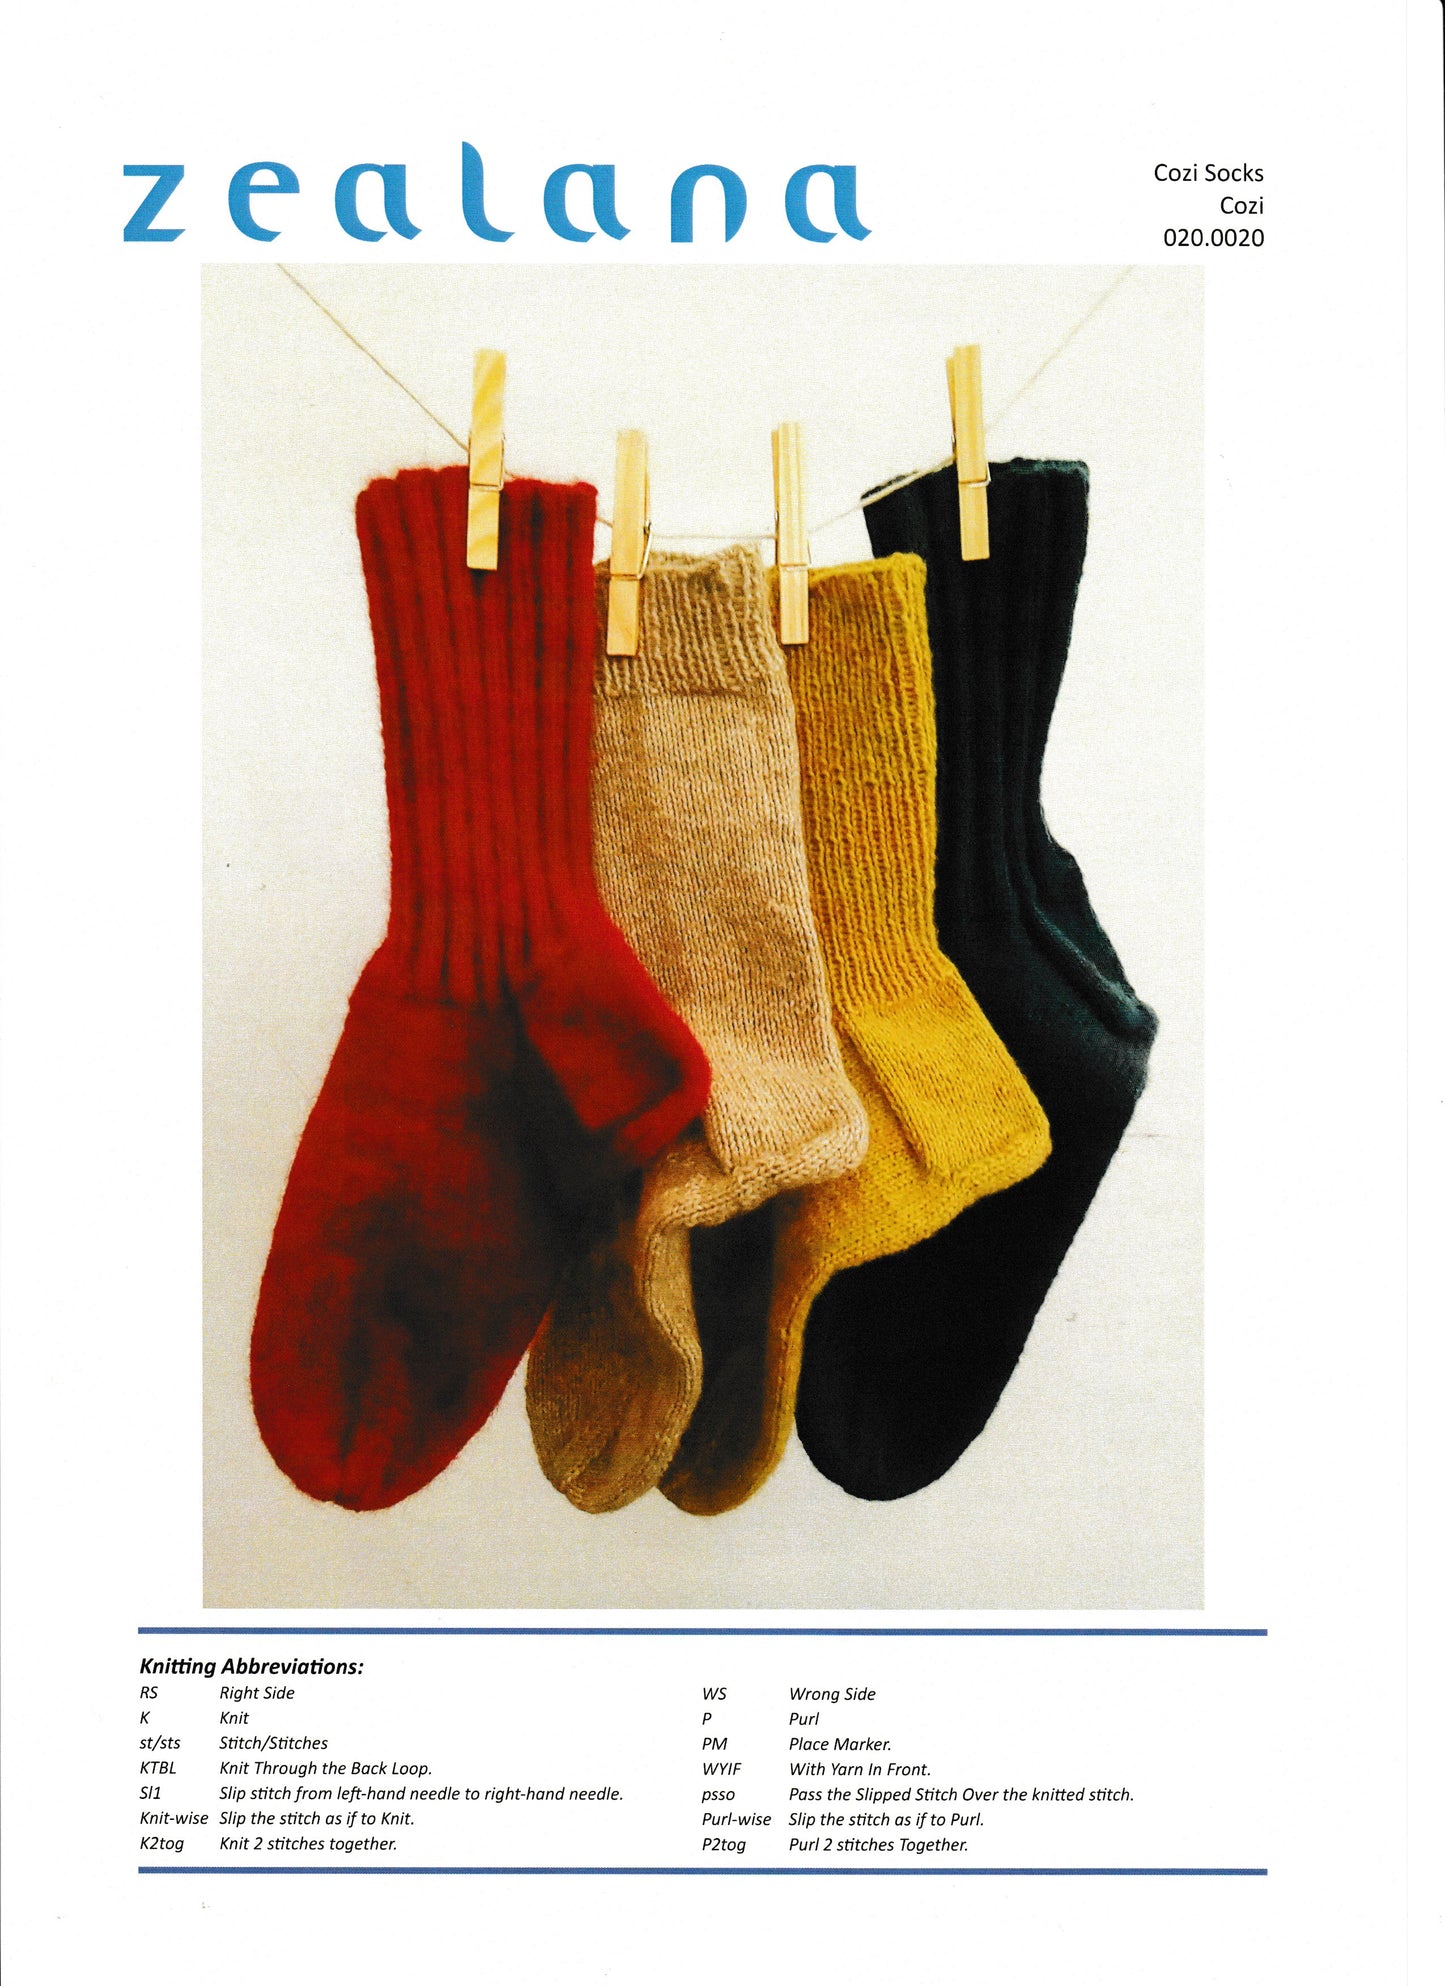 Patterns - Accessories - Cozi socks 020.0020